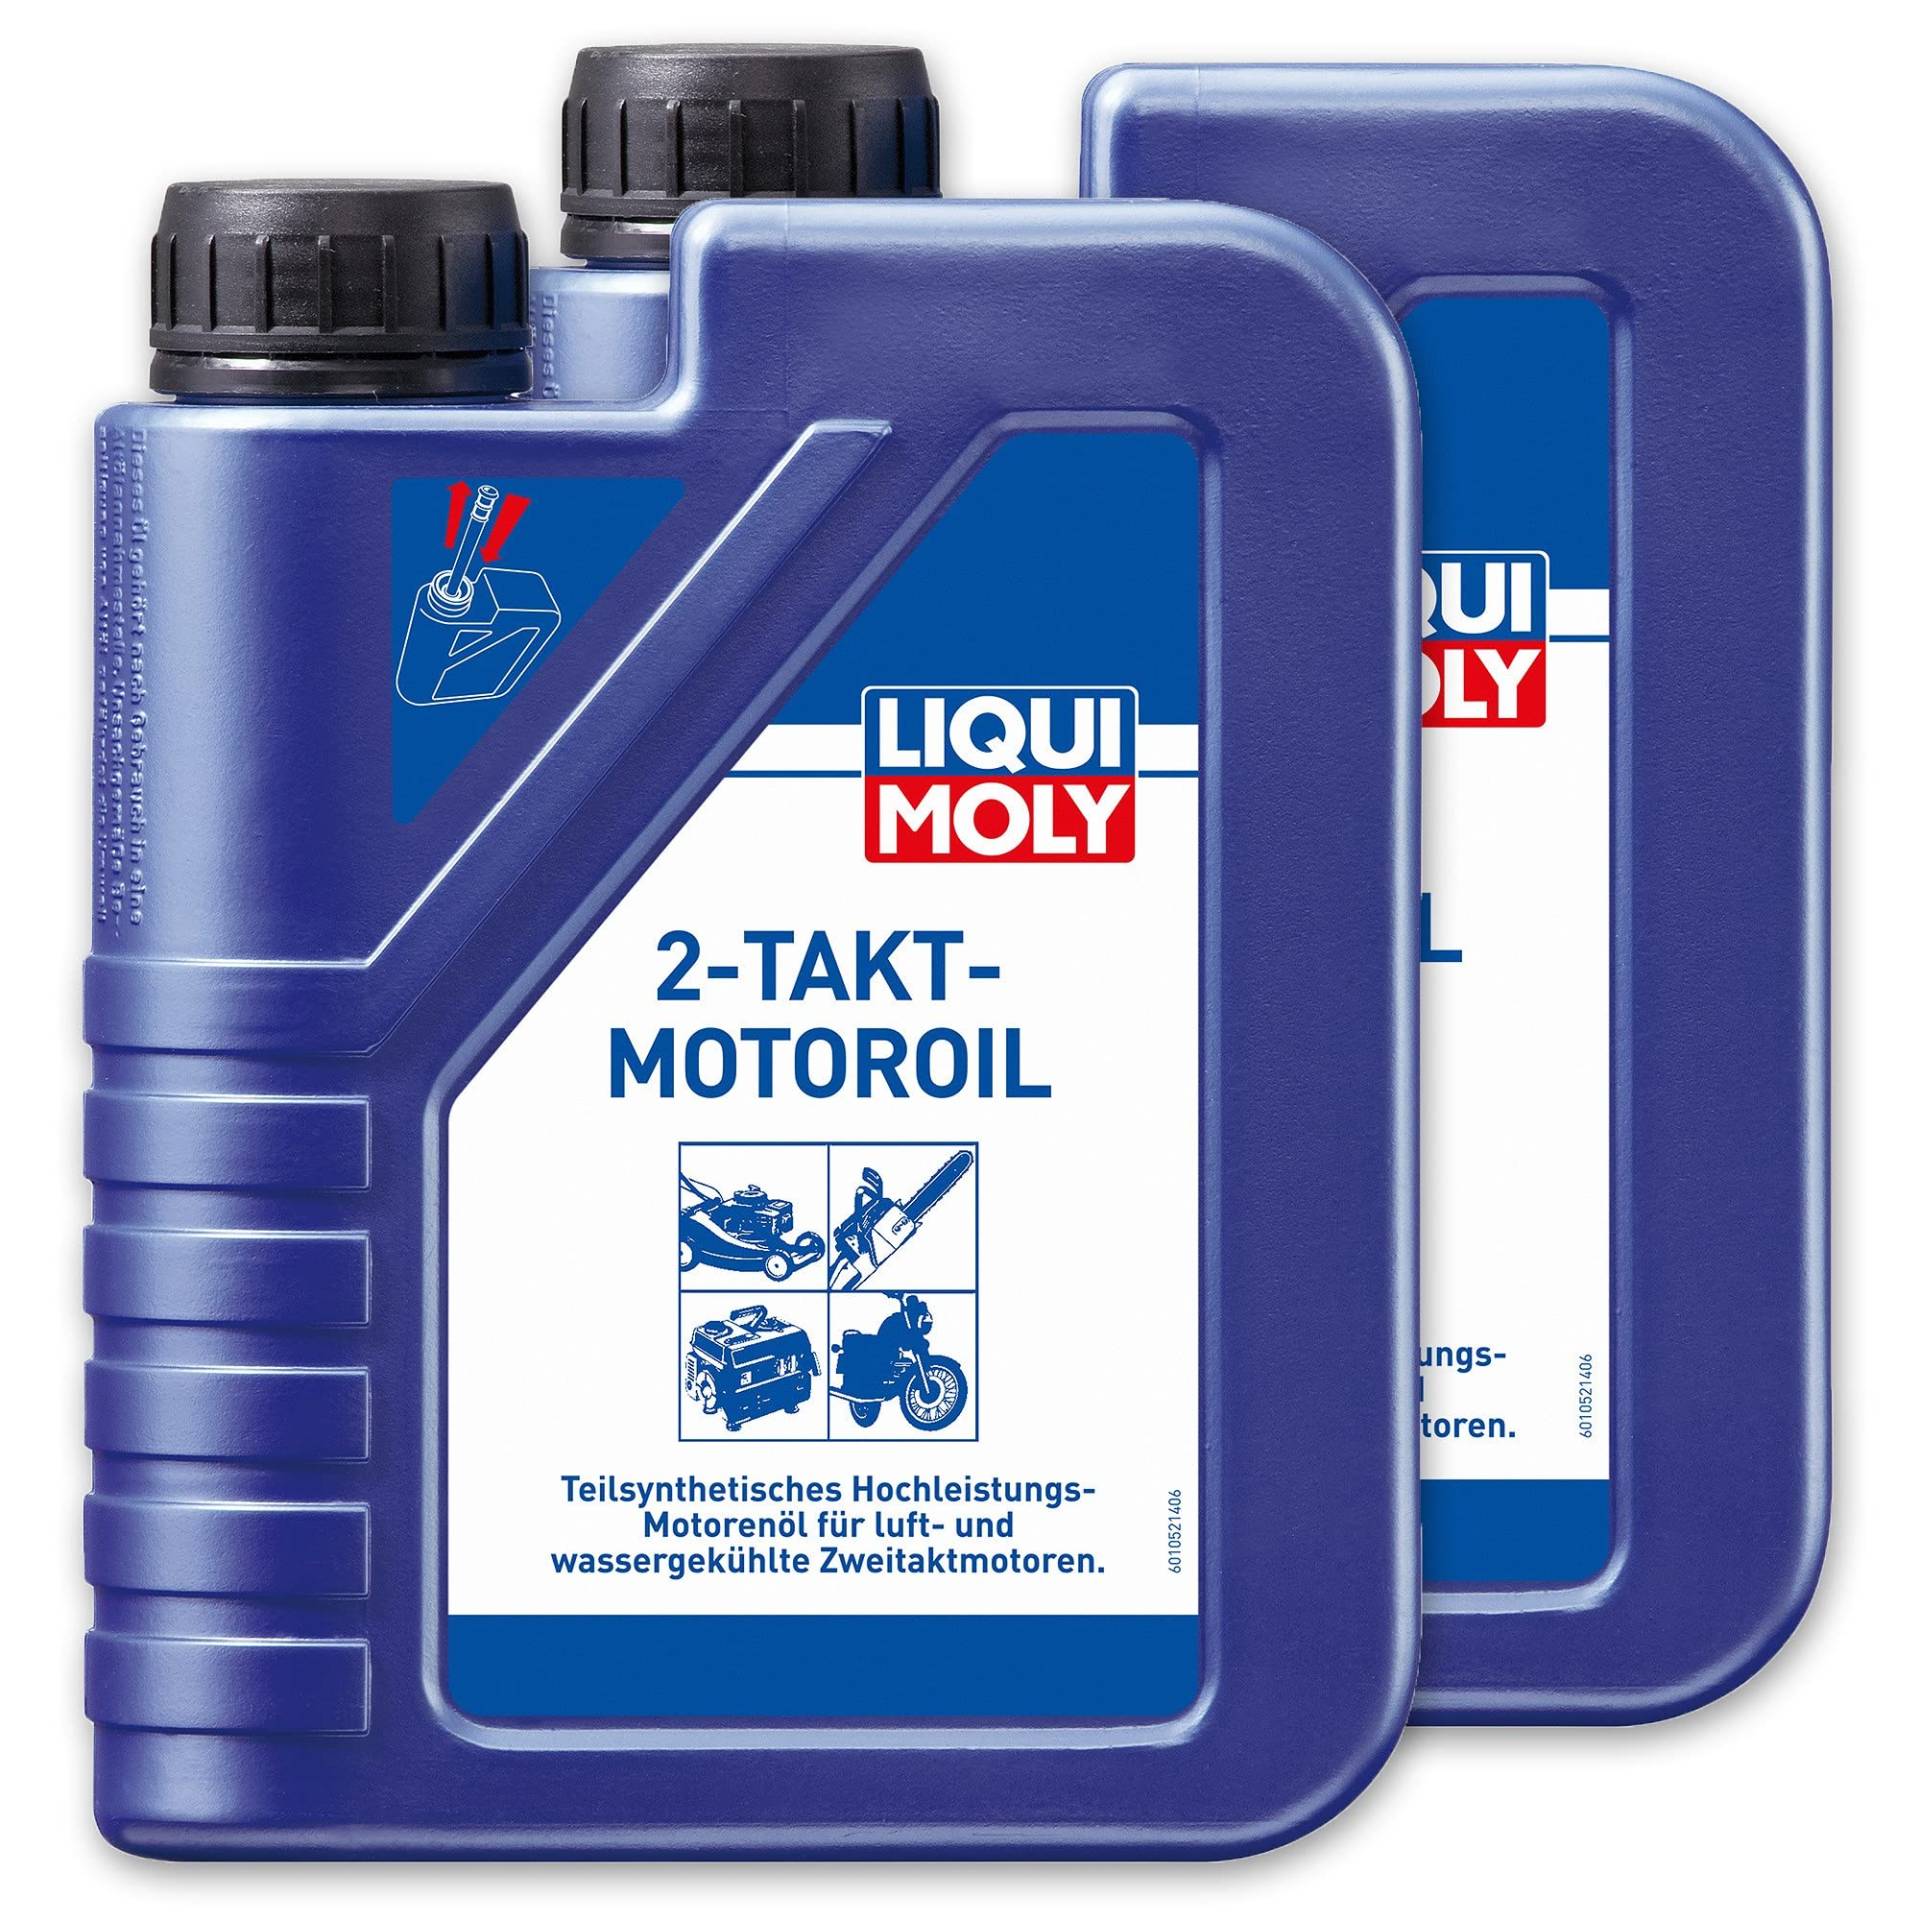 2x LIQUI MOLY 1052 2-Takt-Motoroil selbstmischend Rasenmäher Motorsäge Öl 1L von LIQUI-MOLY_bundle